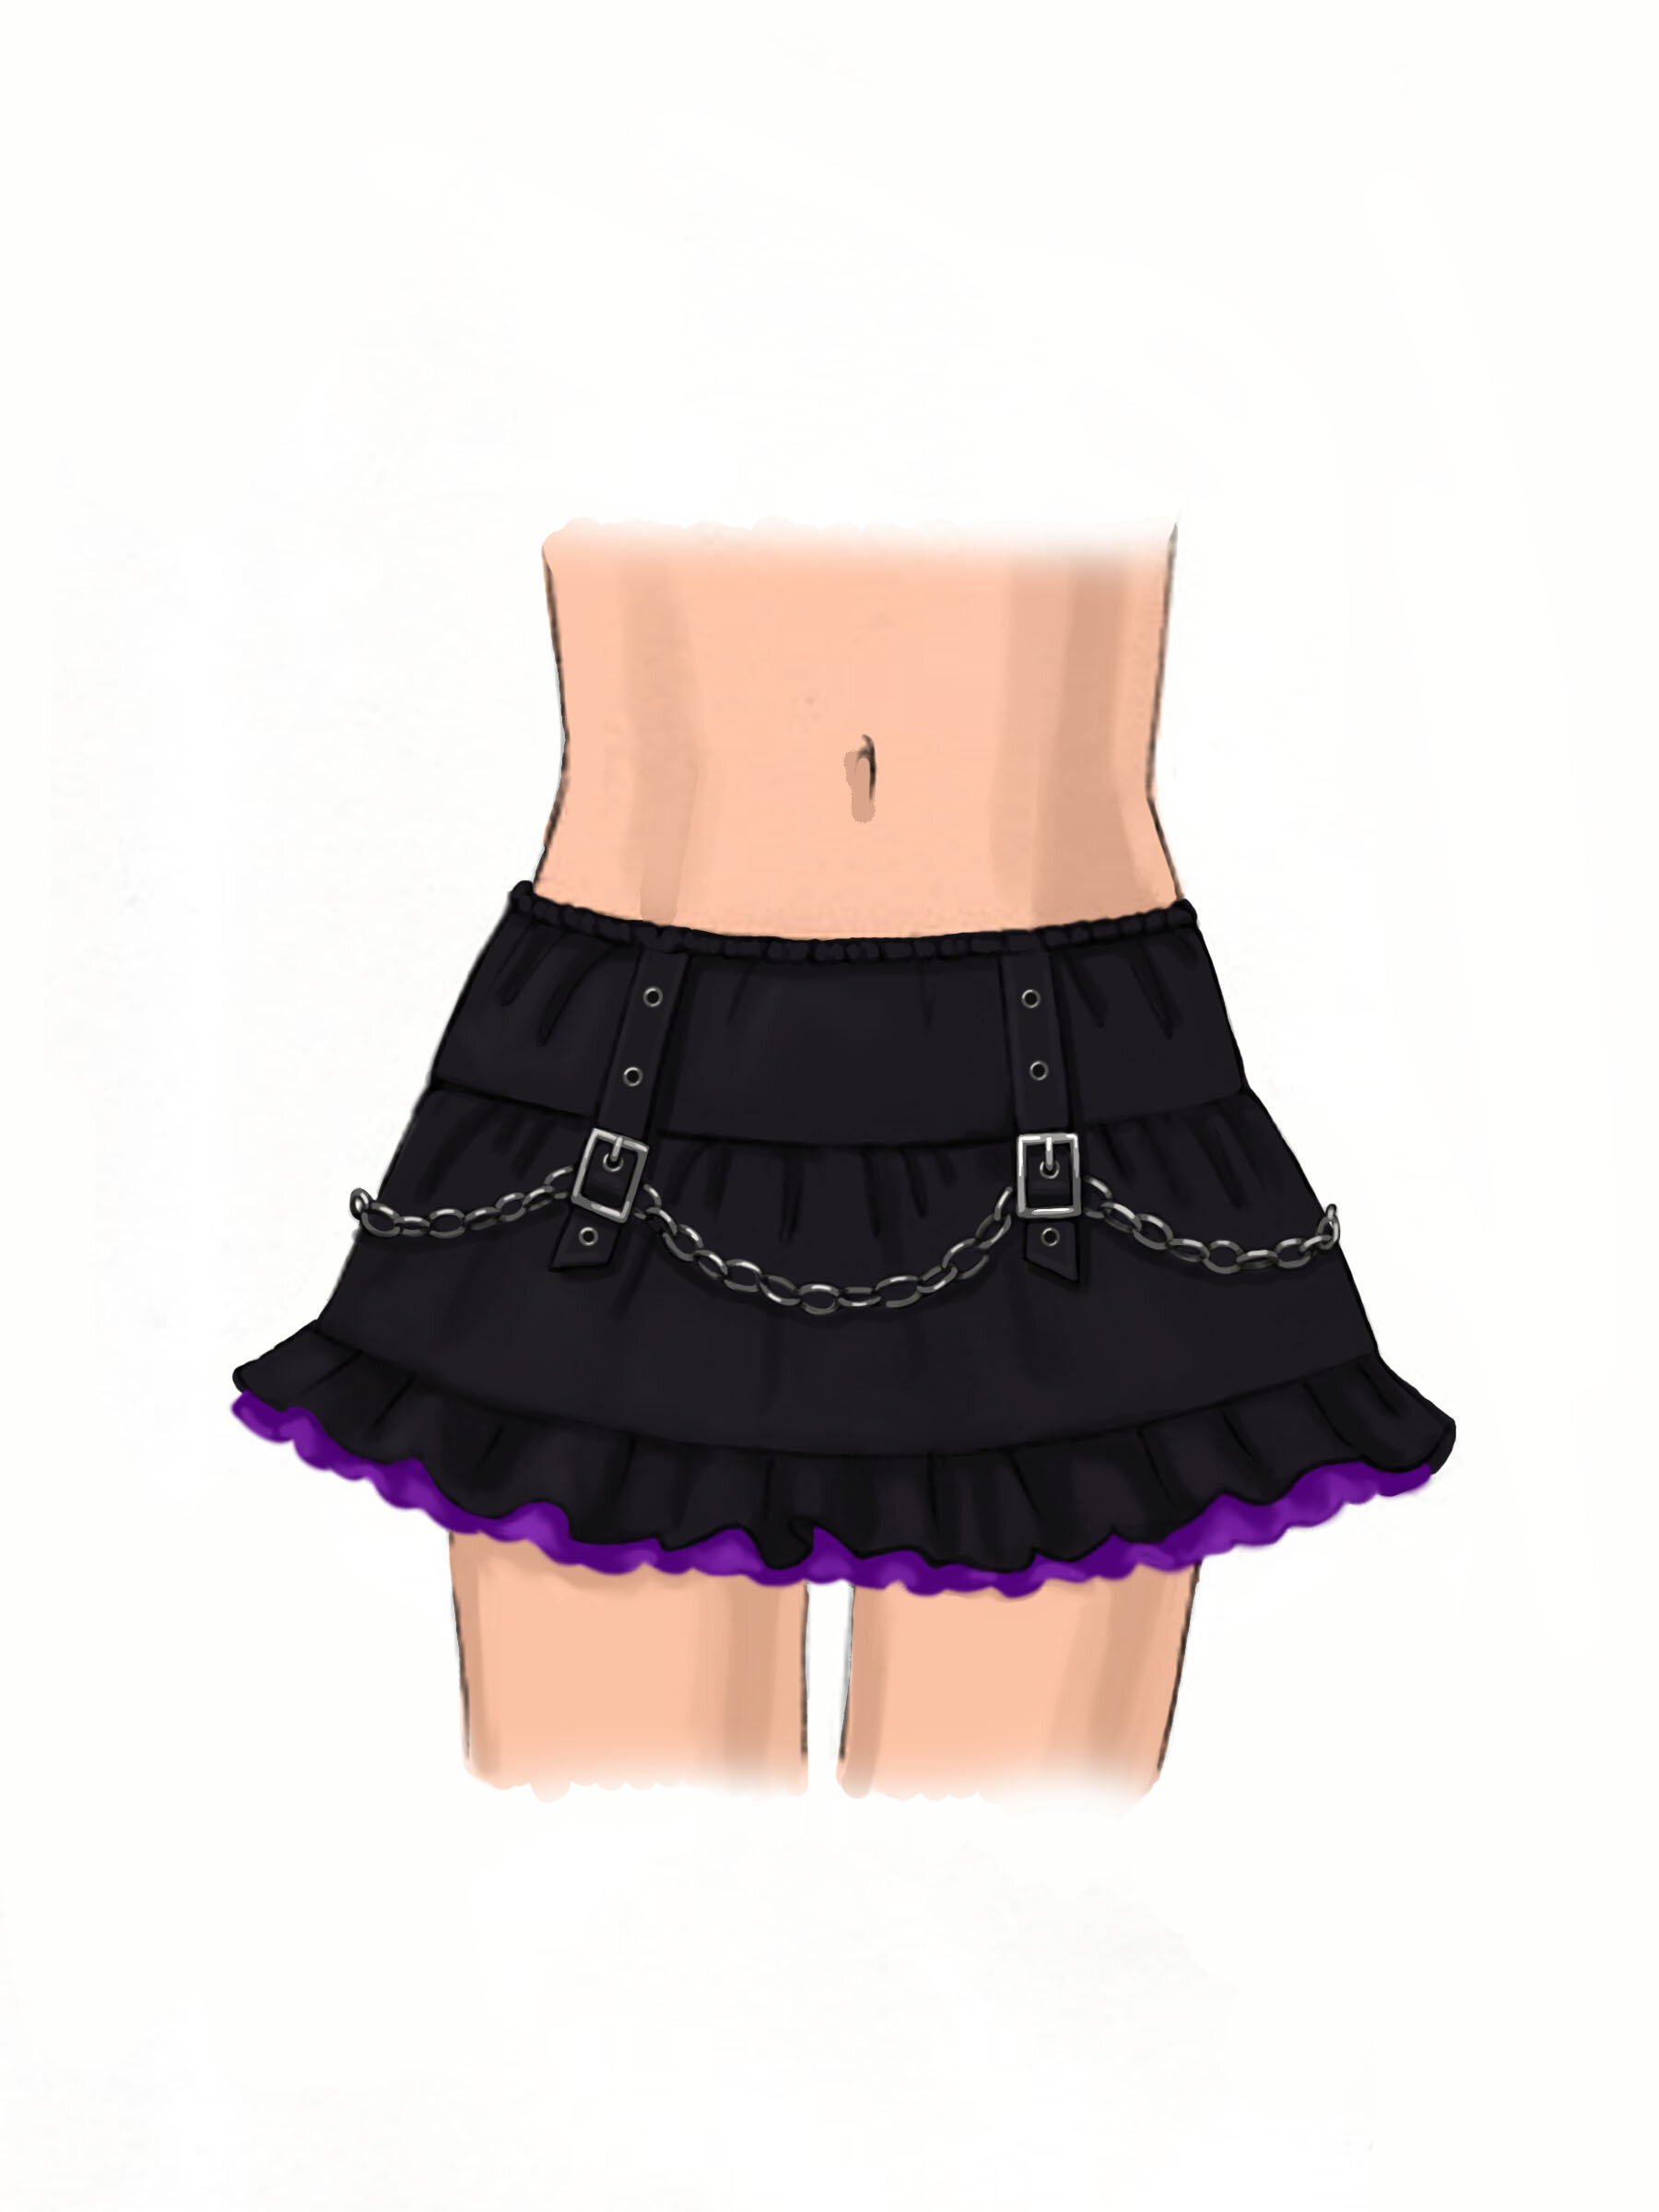 Skirt2.jpg